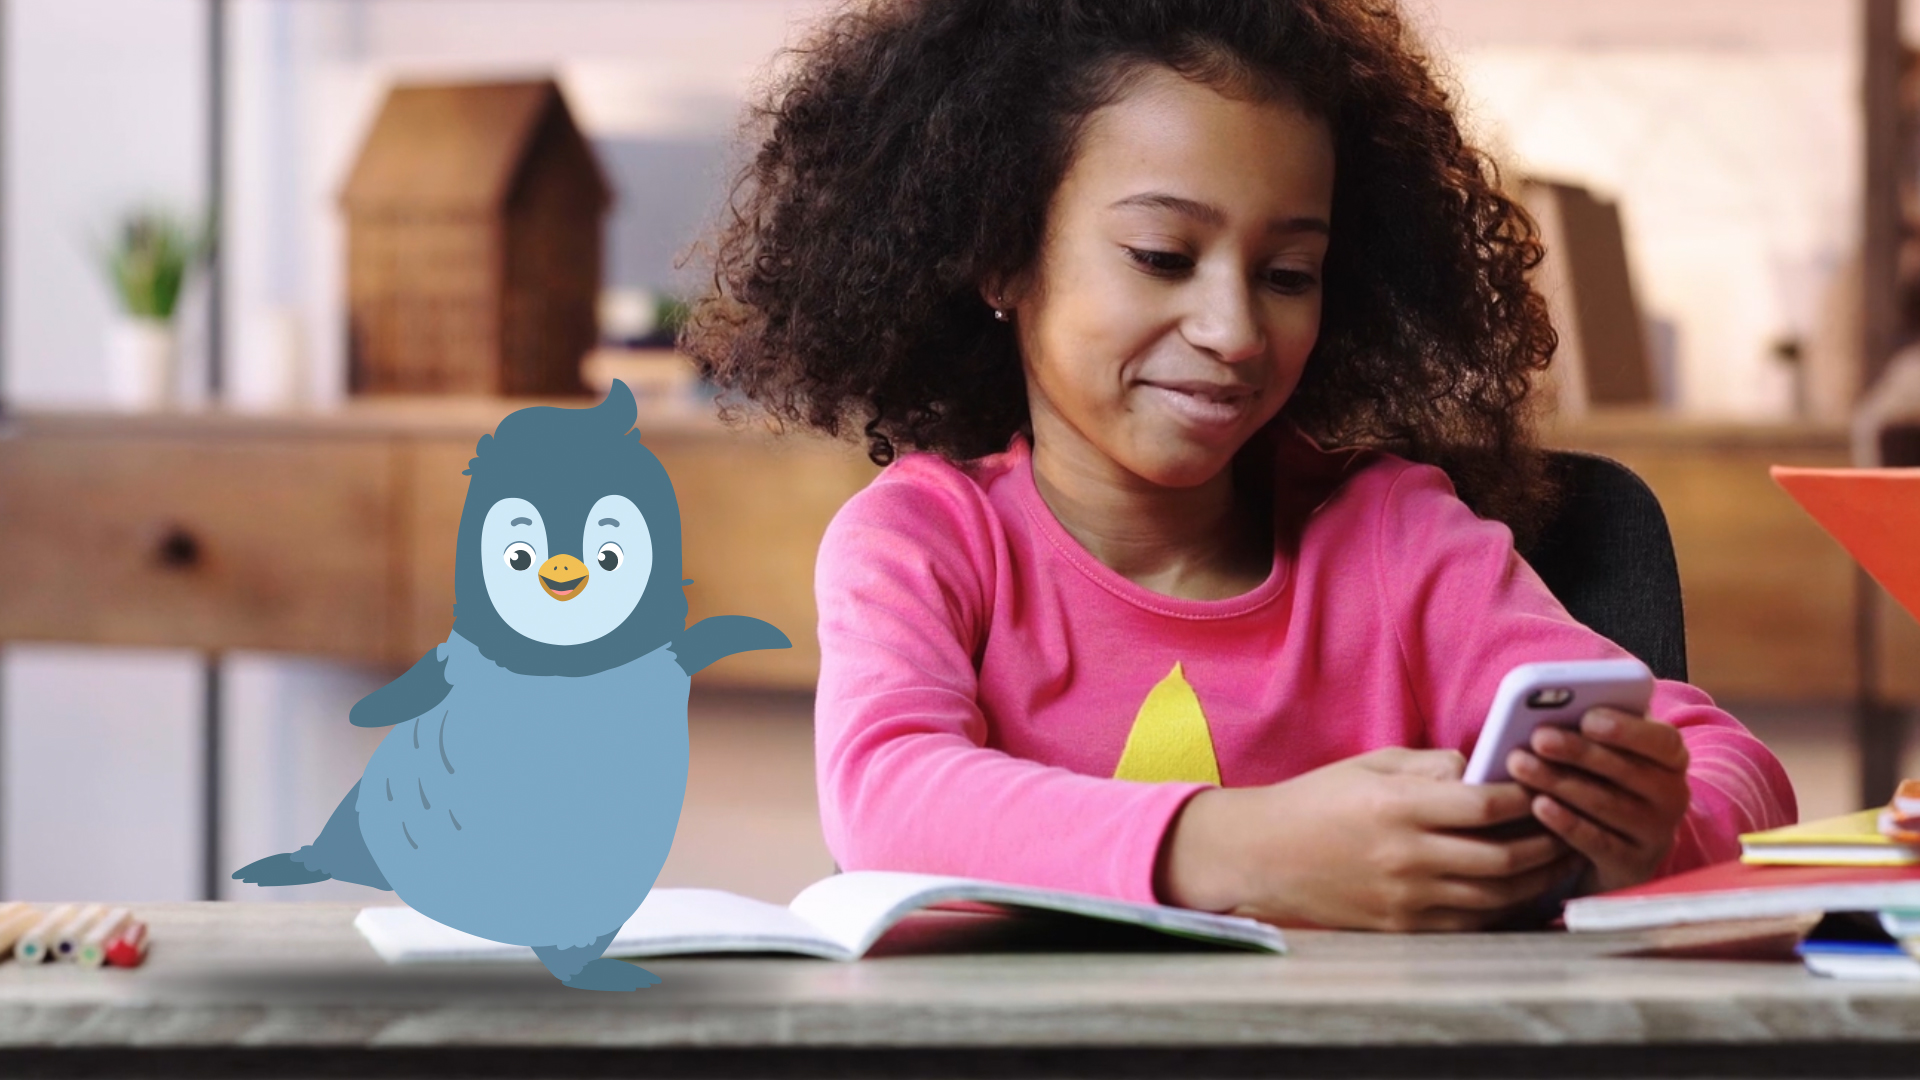 Ein Mädchen sitzt am Tisch und tippt in ihr Handy. Links daneben ist ein illustrierter, tanzender Pinguin auf dem Tisch. Thumbnail eines Werbvideos für die sofatutor GmbH.